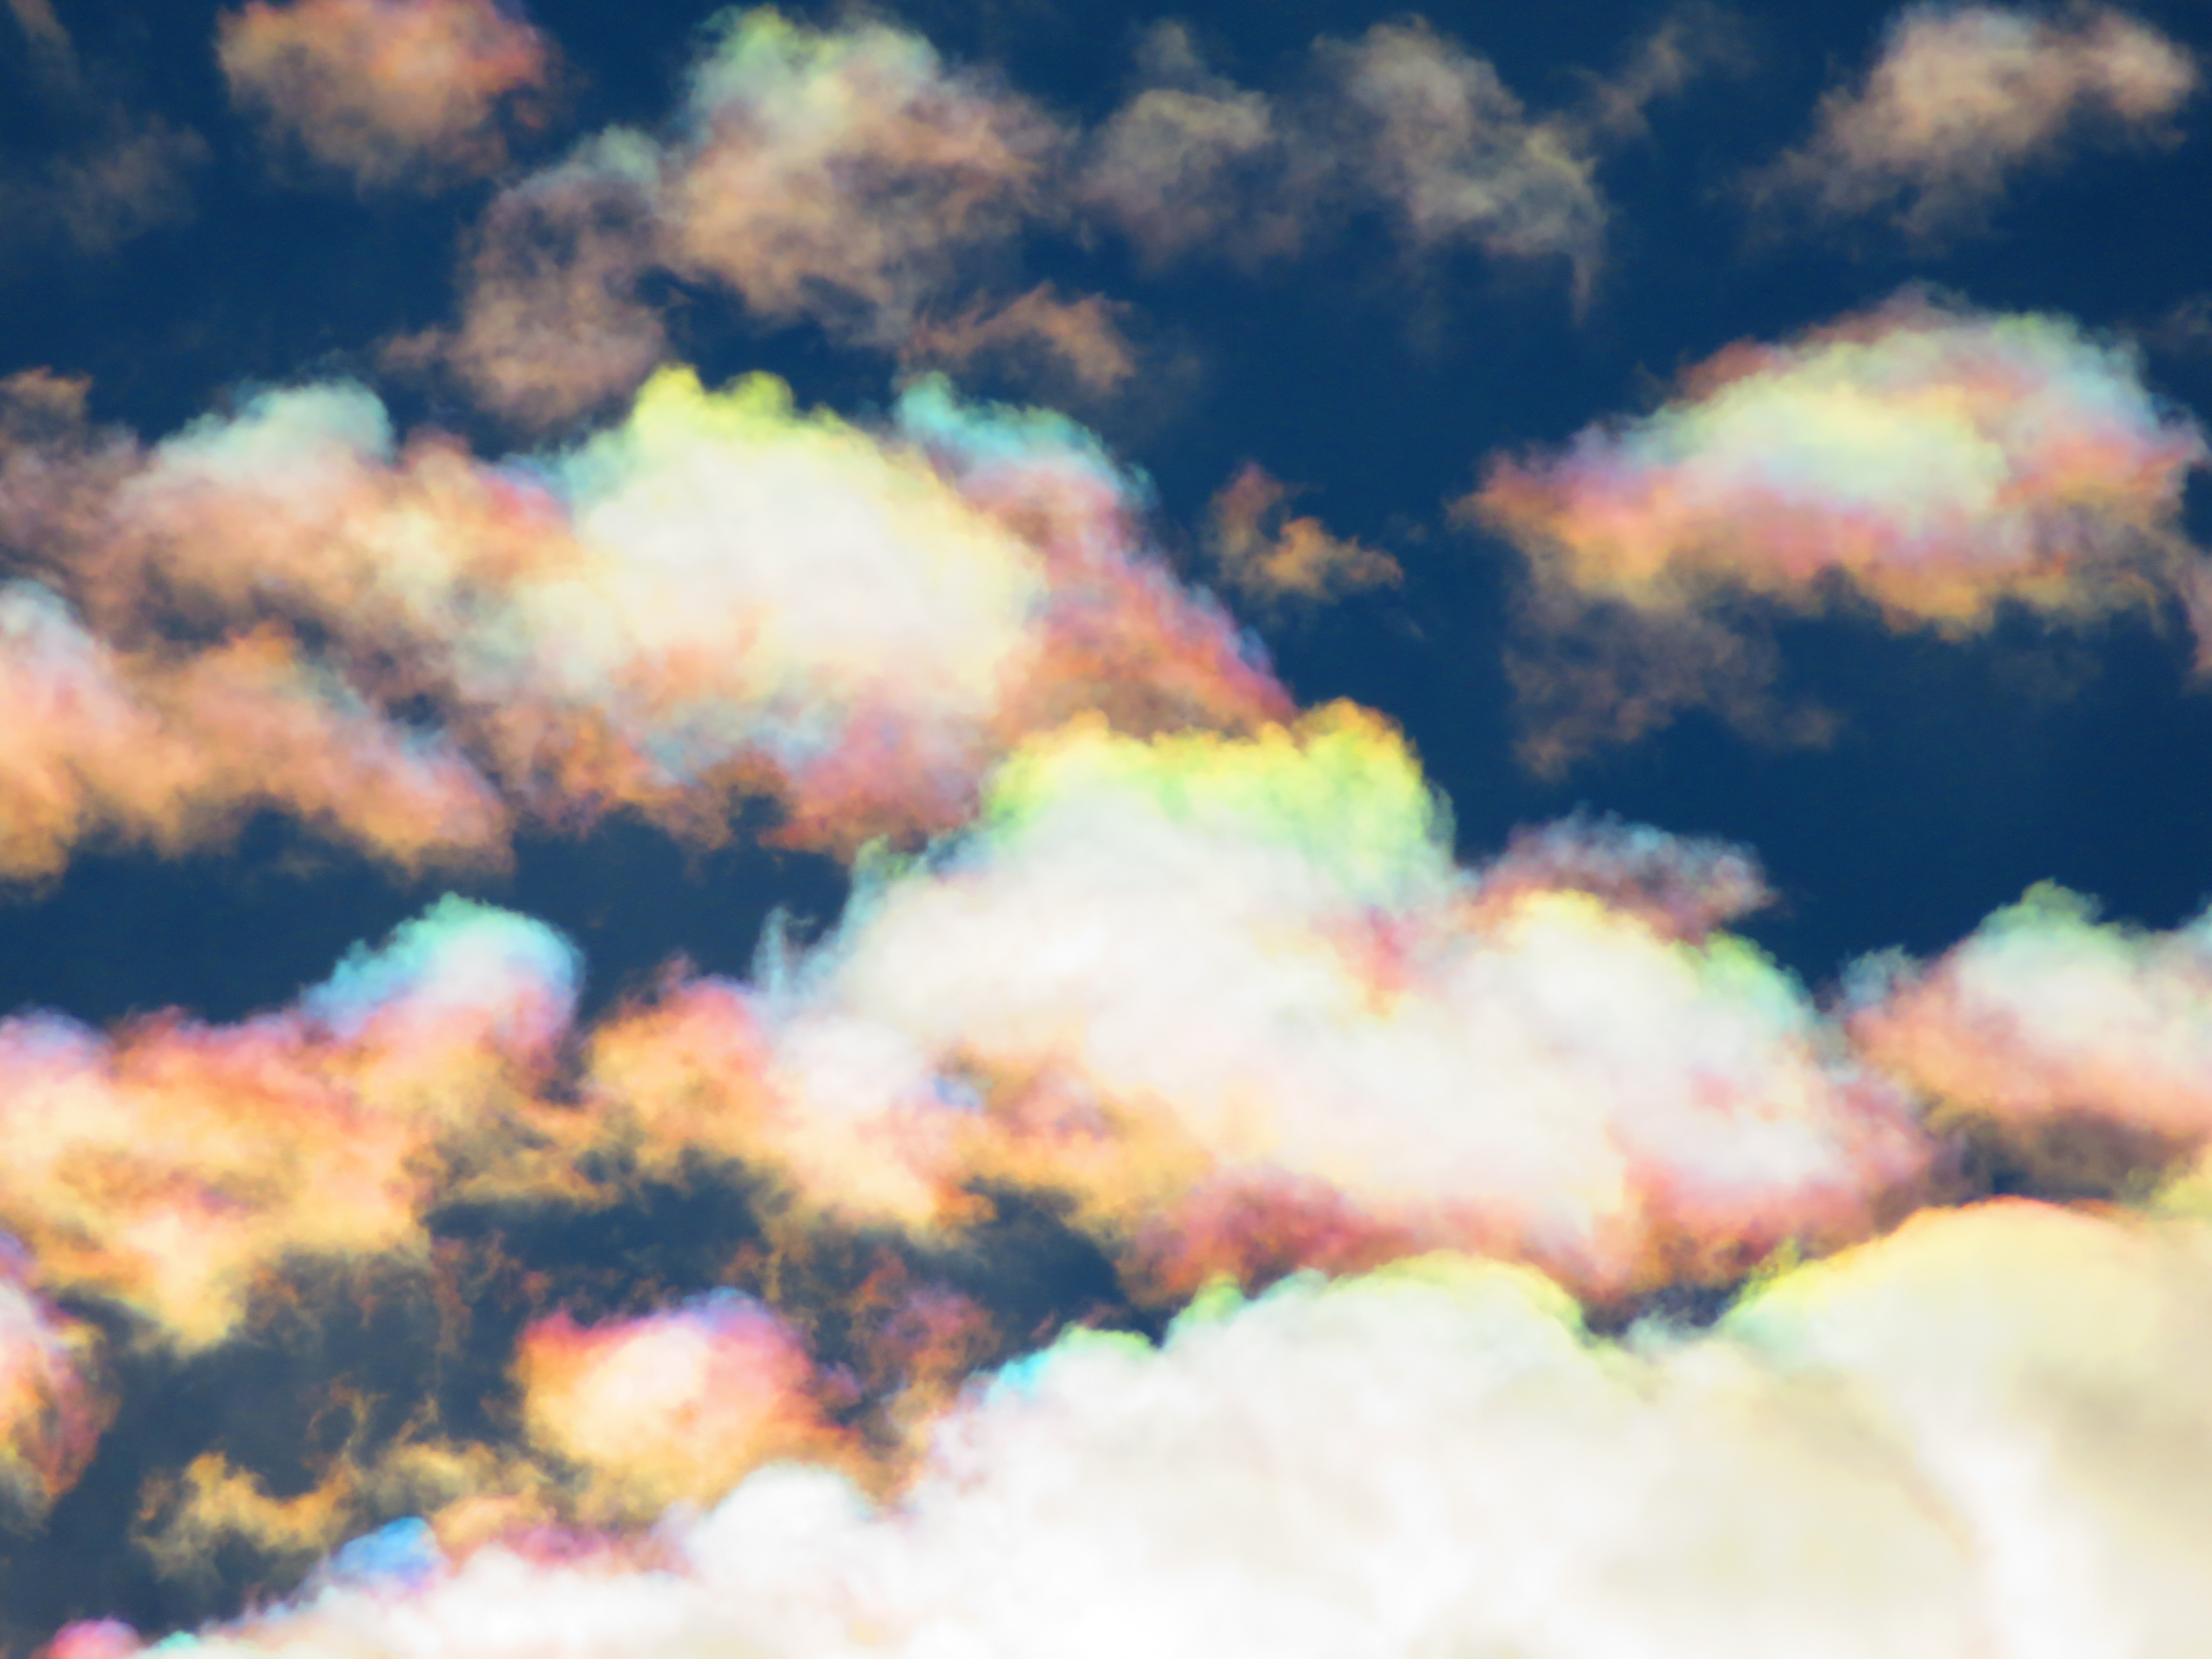 تويتر 荒木健太郎 على تويتر 雲友のみなさまへ Web会議などで使える雲壁紙100枚をご用意しました 後光がさして神々しい感じになったり 雲の上の人感が溢れる雰囲気になるものなど 色々あります ぜひお気に入りの雲や空を見つけてご活用ください みなさまが